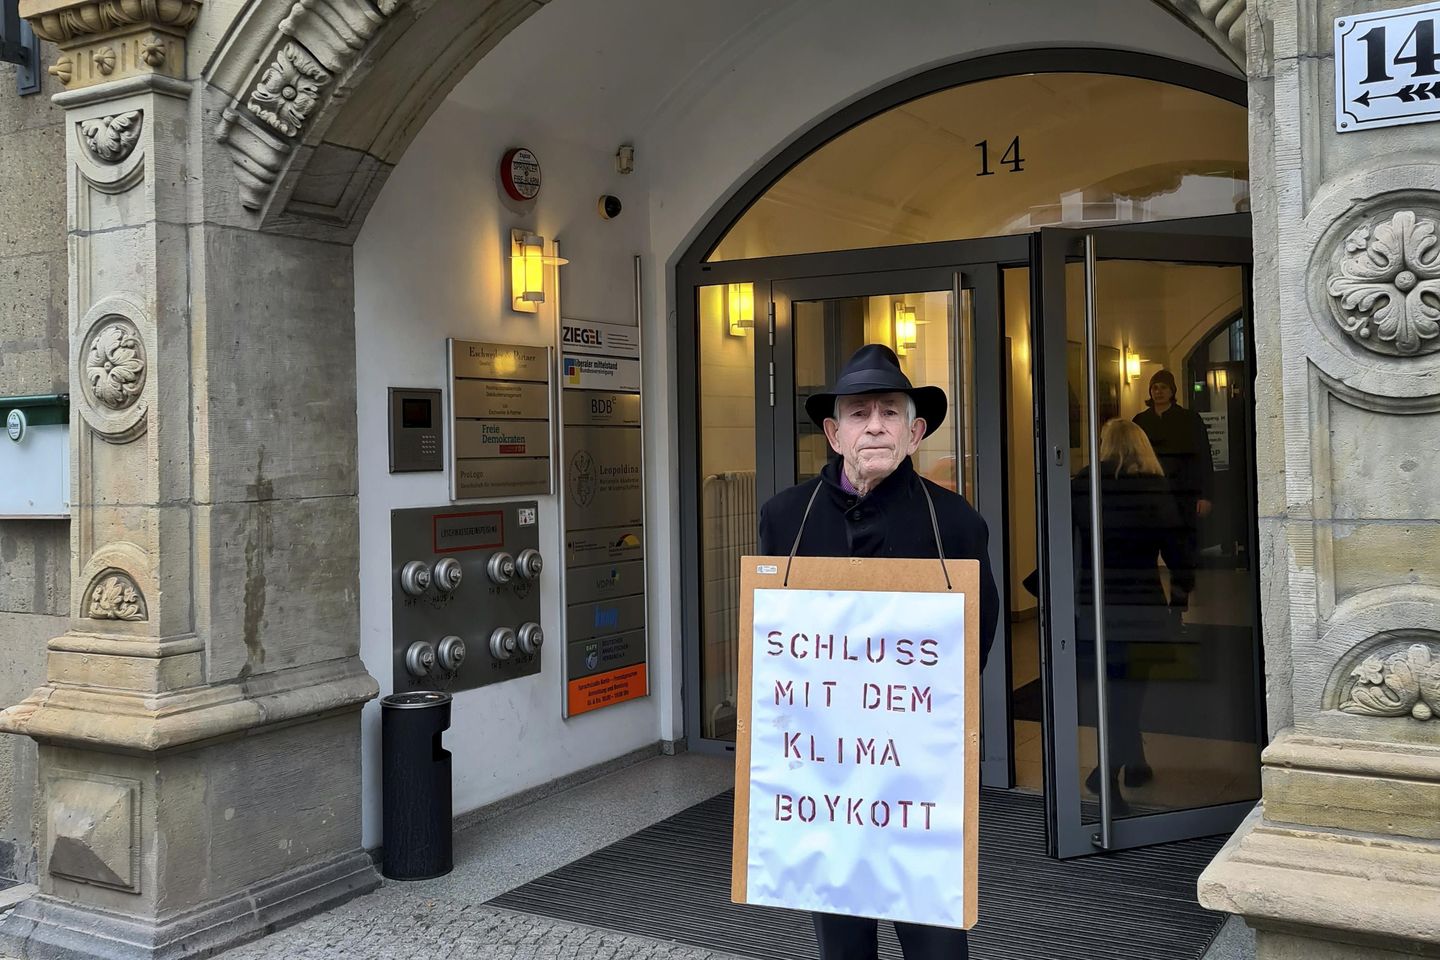 İklim aktivistleri Almanya'nın ulaşım politikalarını protesto ediyor